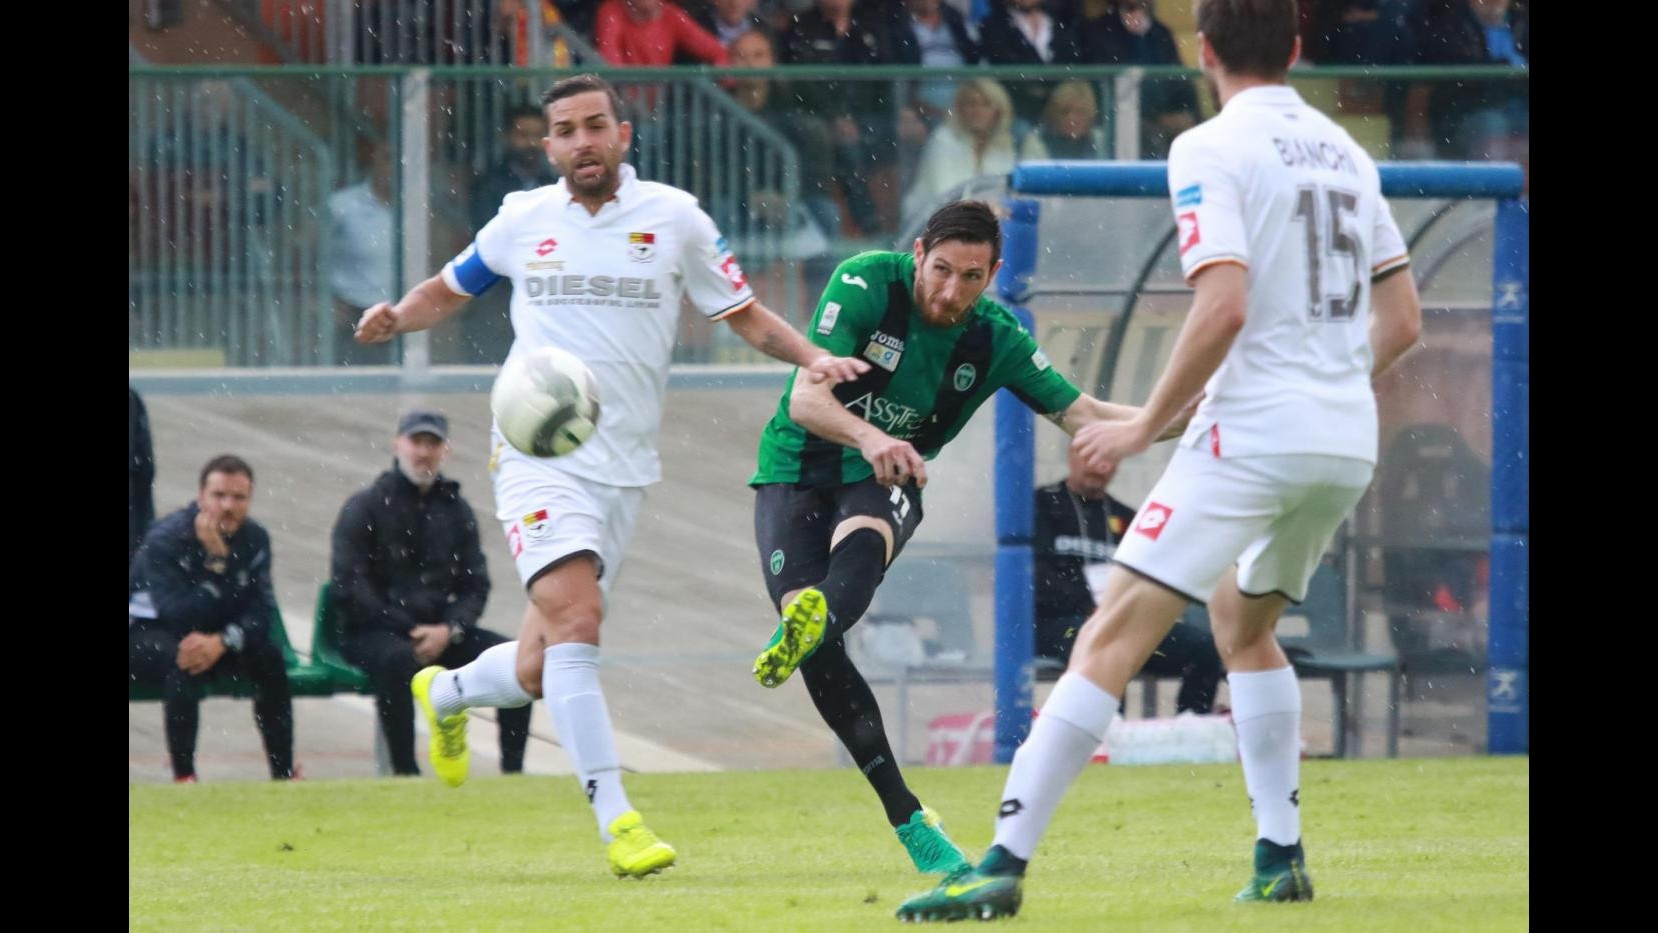 FOTO Lega Pro Playoff, Pordenone-Bassano 2-0